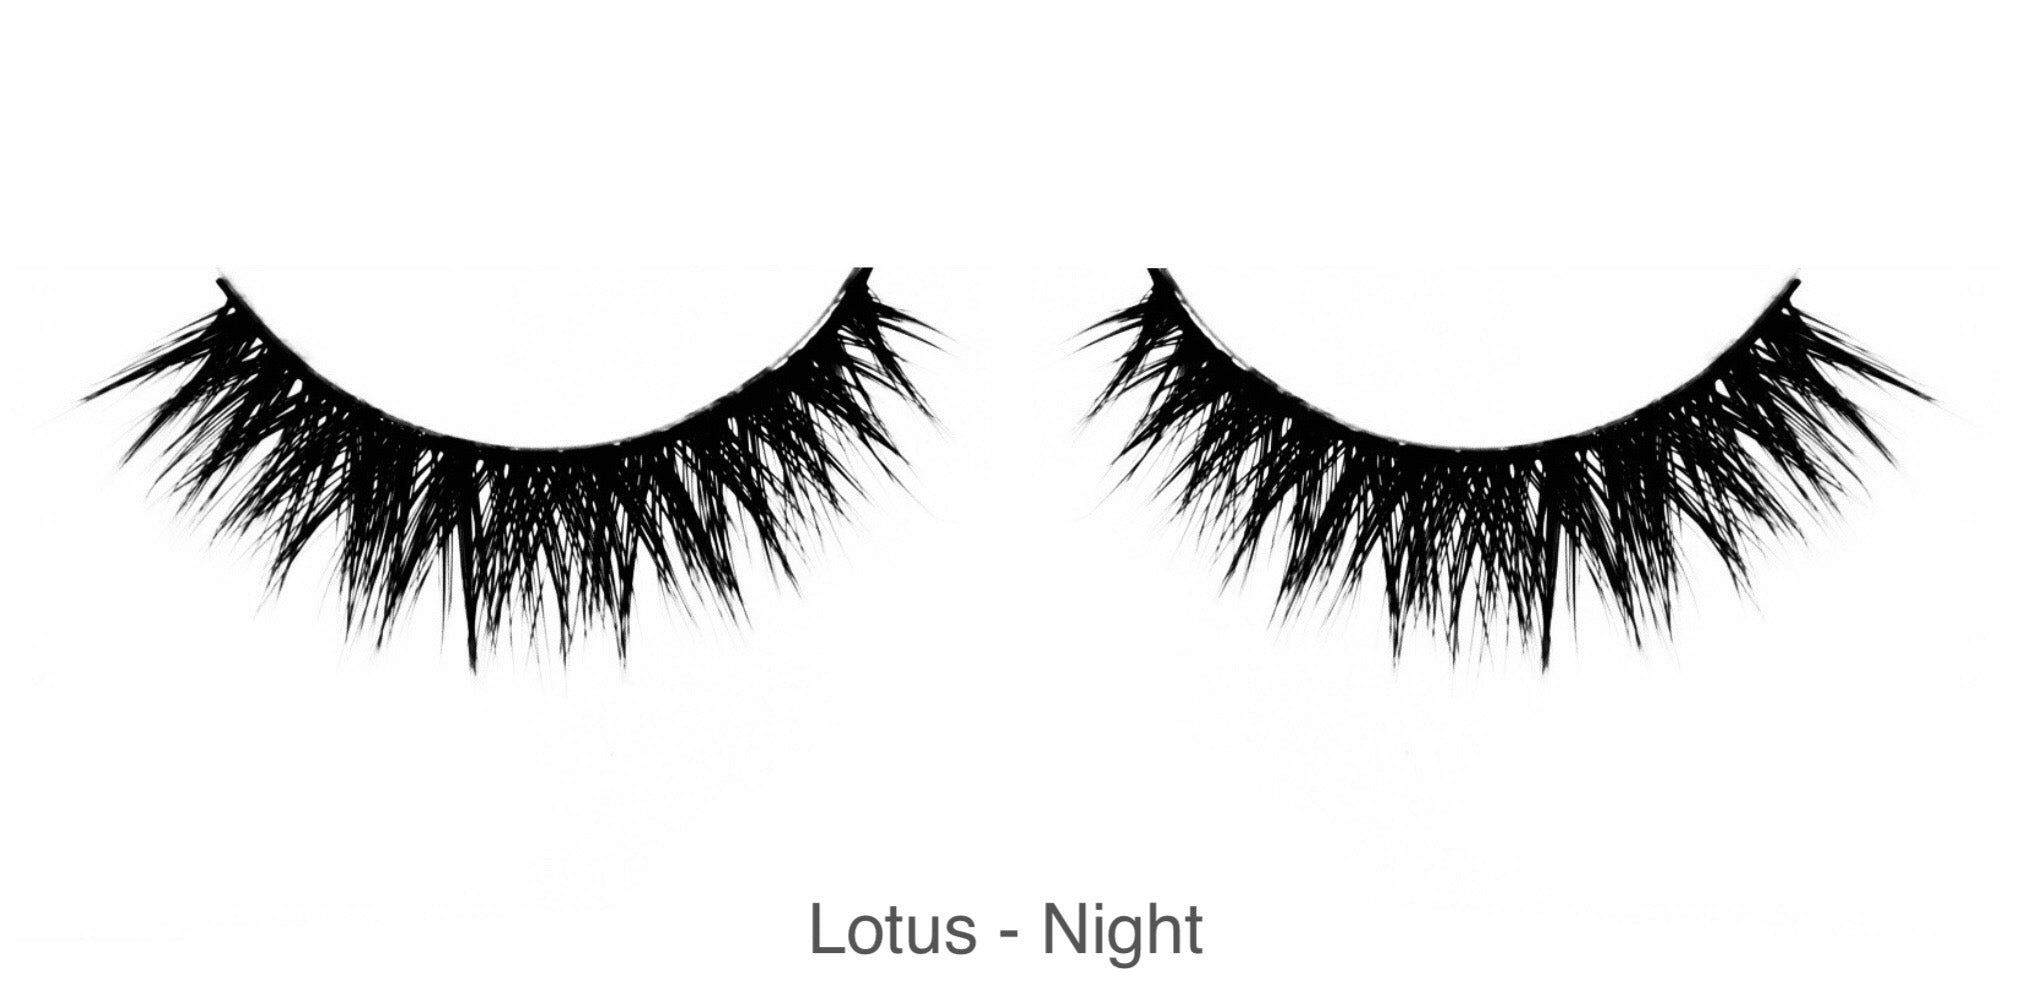 Lotus - Night